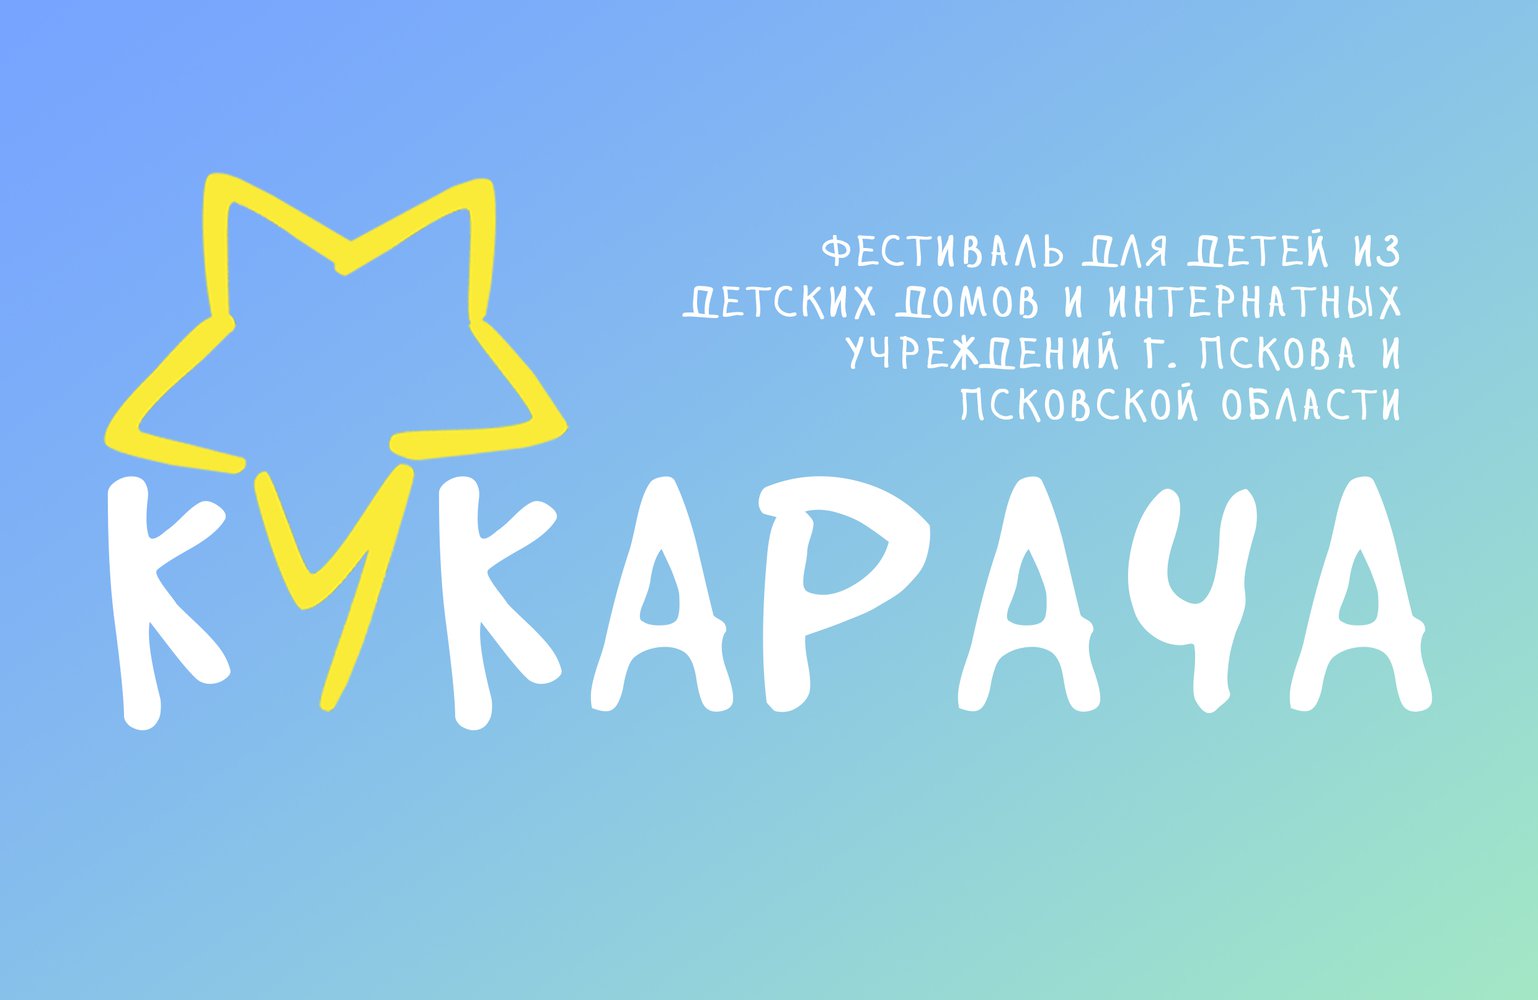 Открываем приём заявок на фестиваль молодых талантов среди воспитанников детских домов и интернатных учреждений Псковской области «Кукарача».